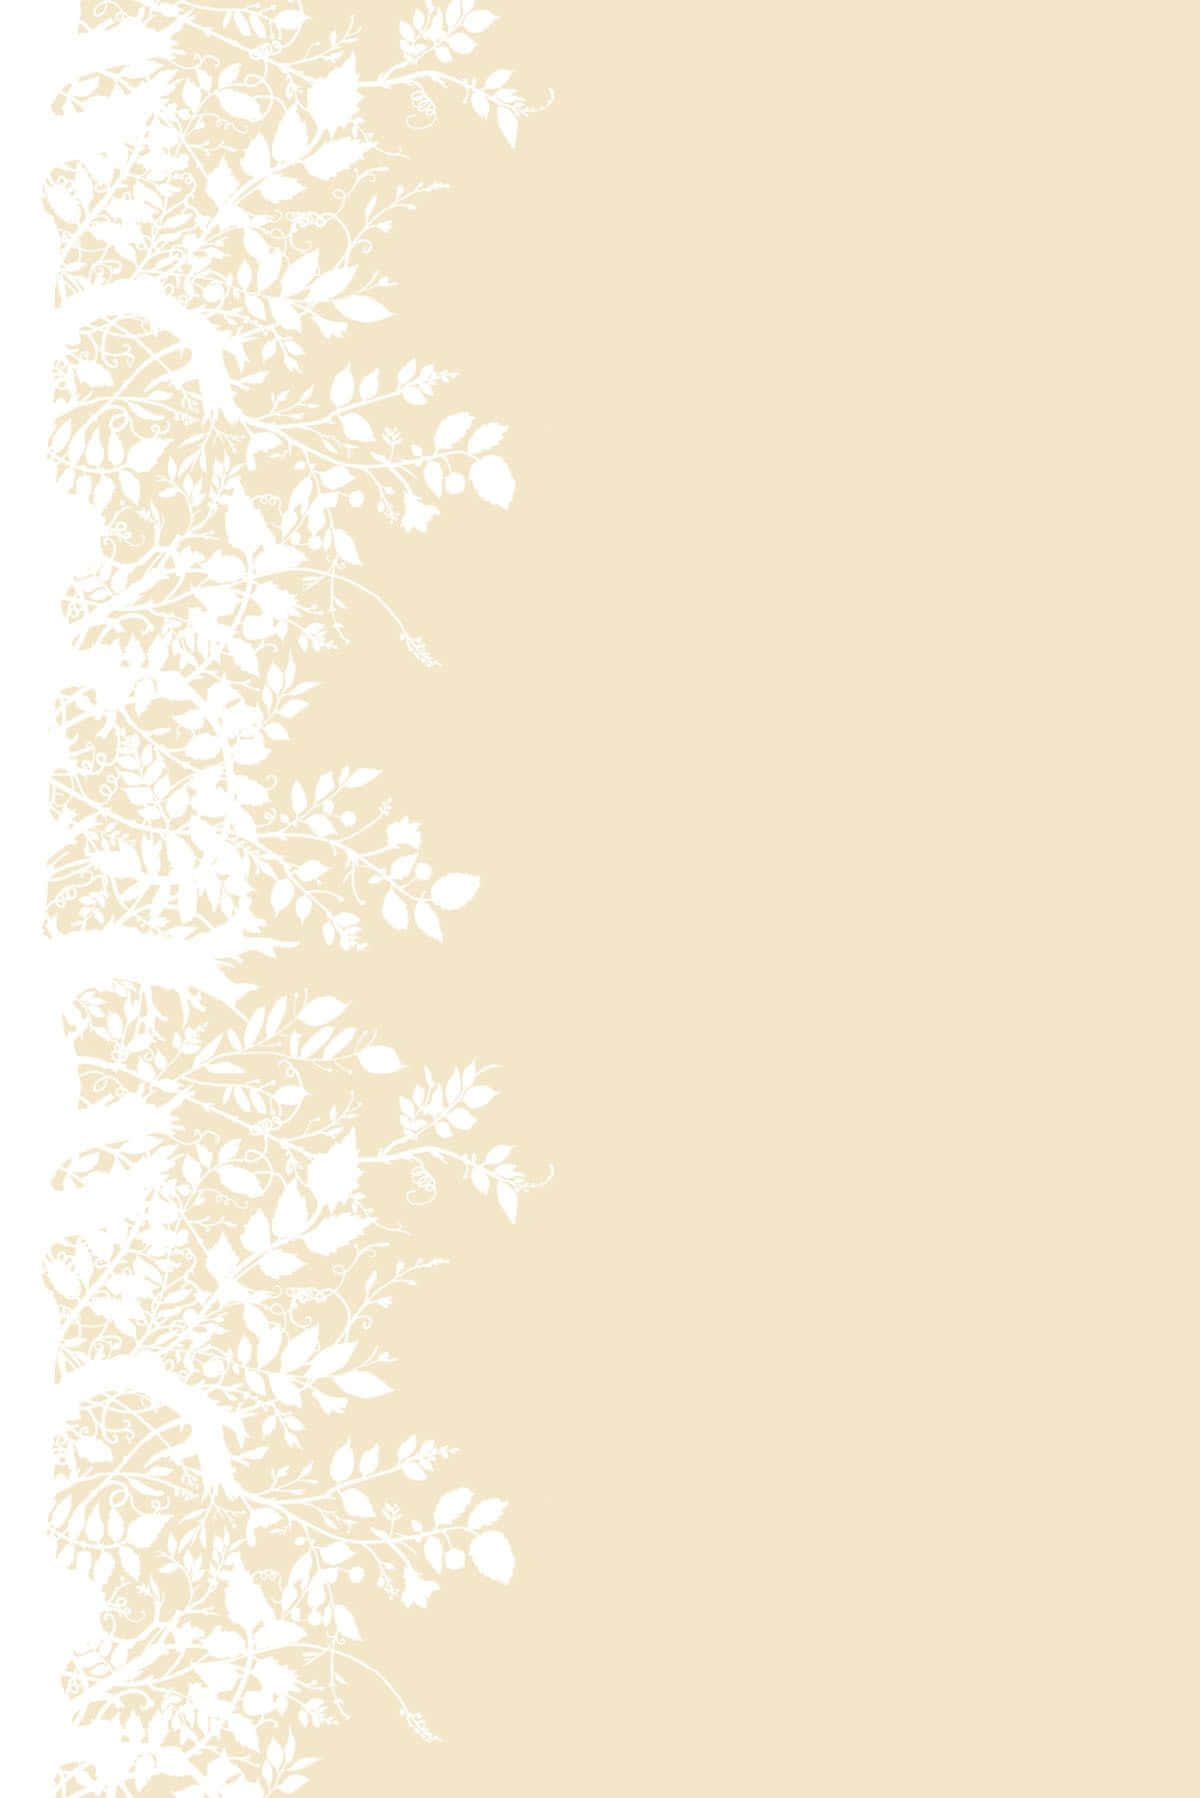 Elegant Cream-colored Design Wallpaper